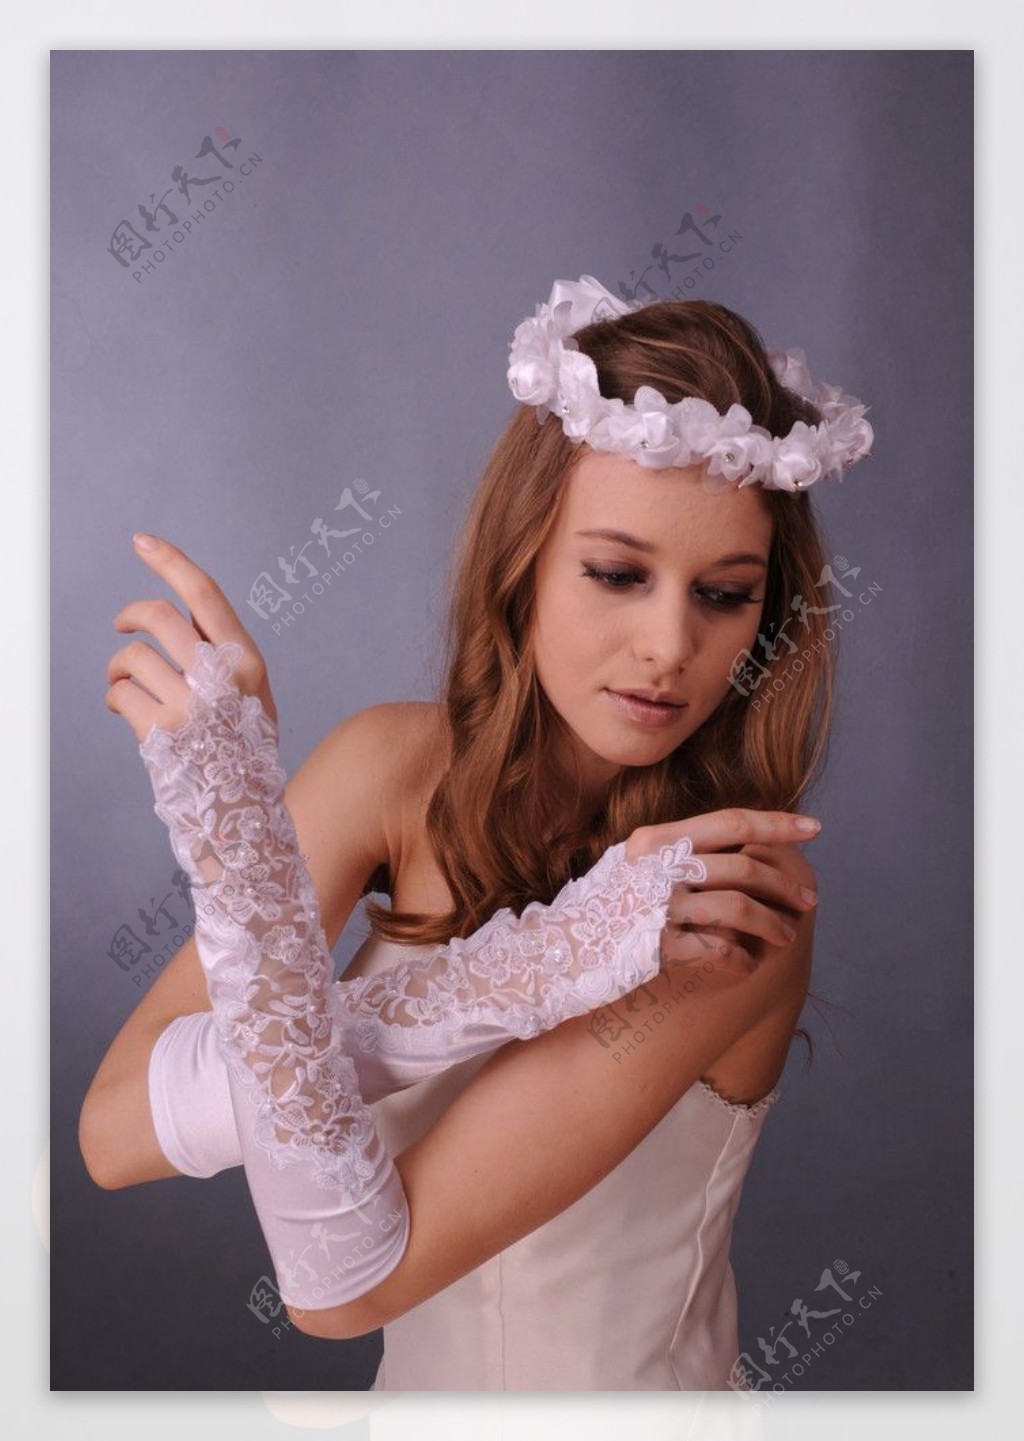 新娘结婚手套 中长款蕾丝婚礼白色手套勾指镂空手套 1070-阿里巴巴